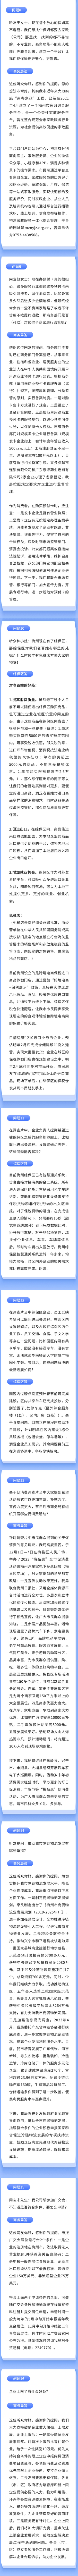 融媒体政务工作报告文章长图(2).jpg